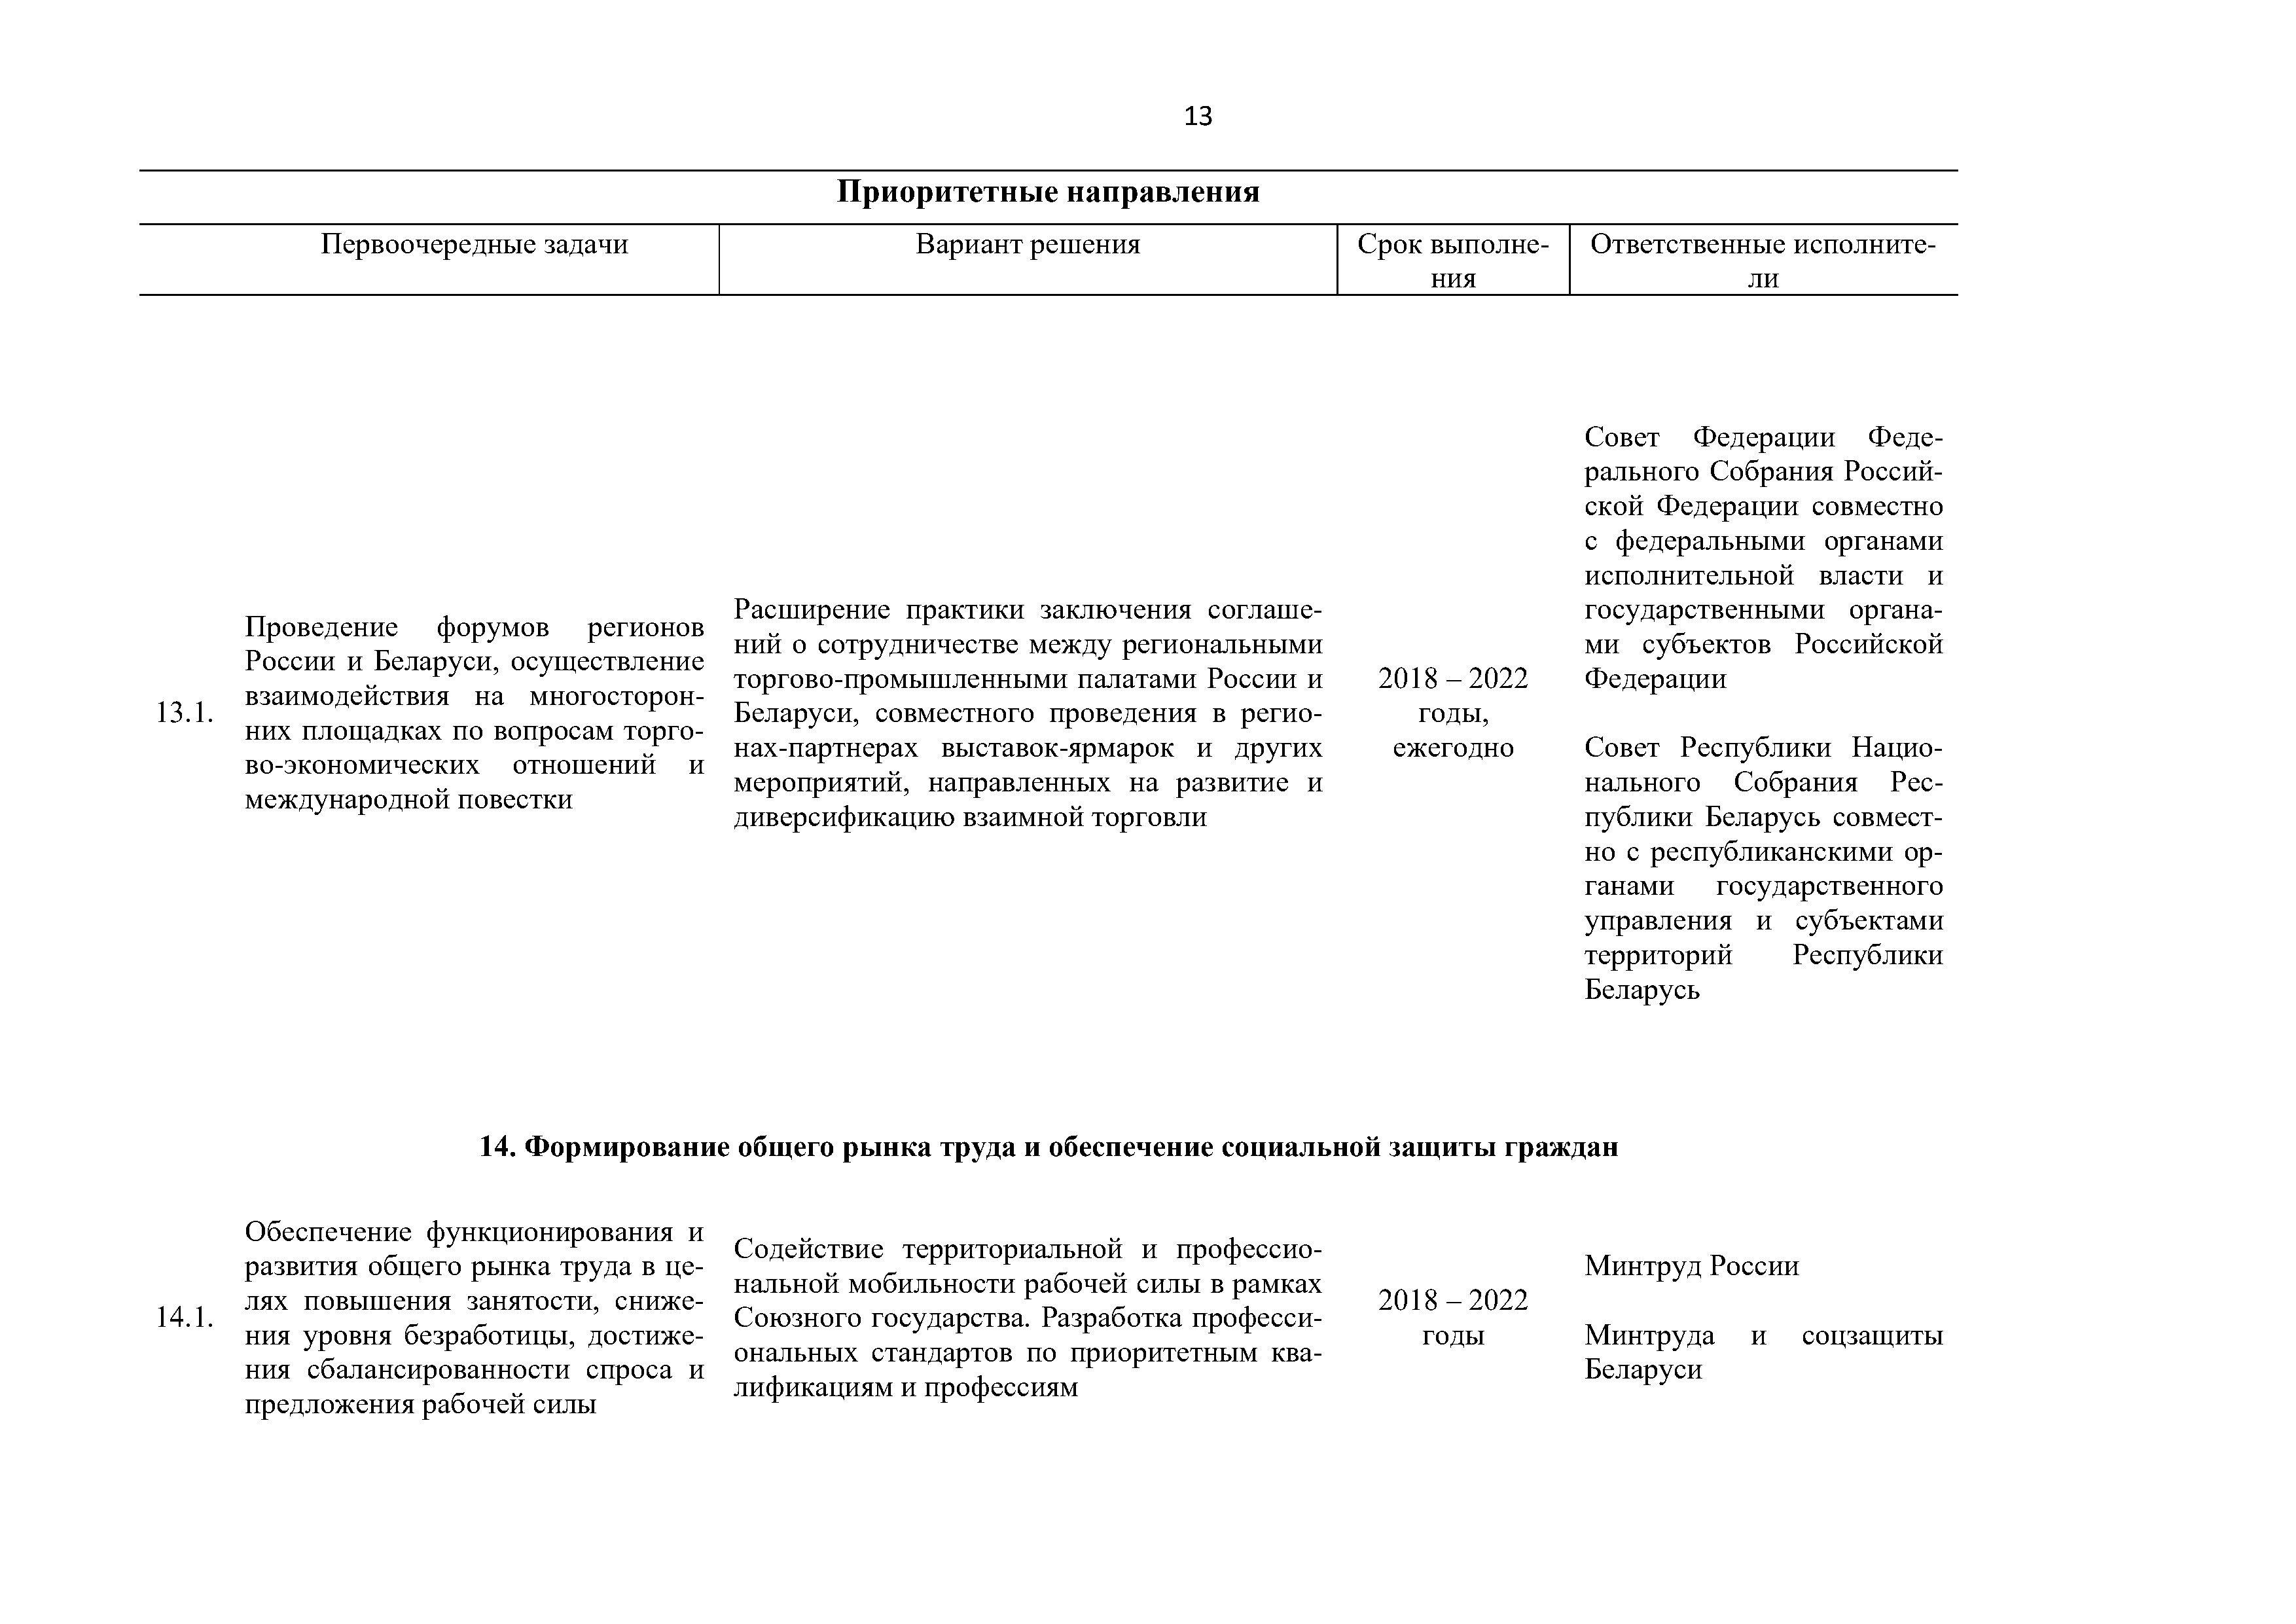 Приоритетные направления и первоочередные задачи развития Союзного государства на 2018 – 2022 г. (Страница 13)